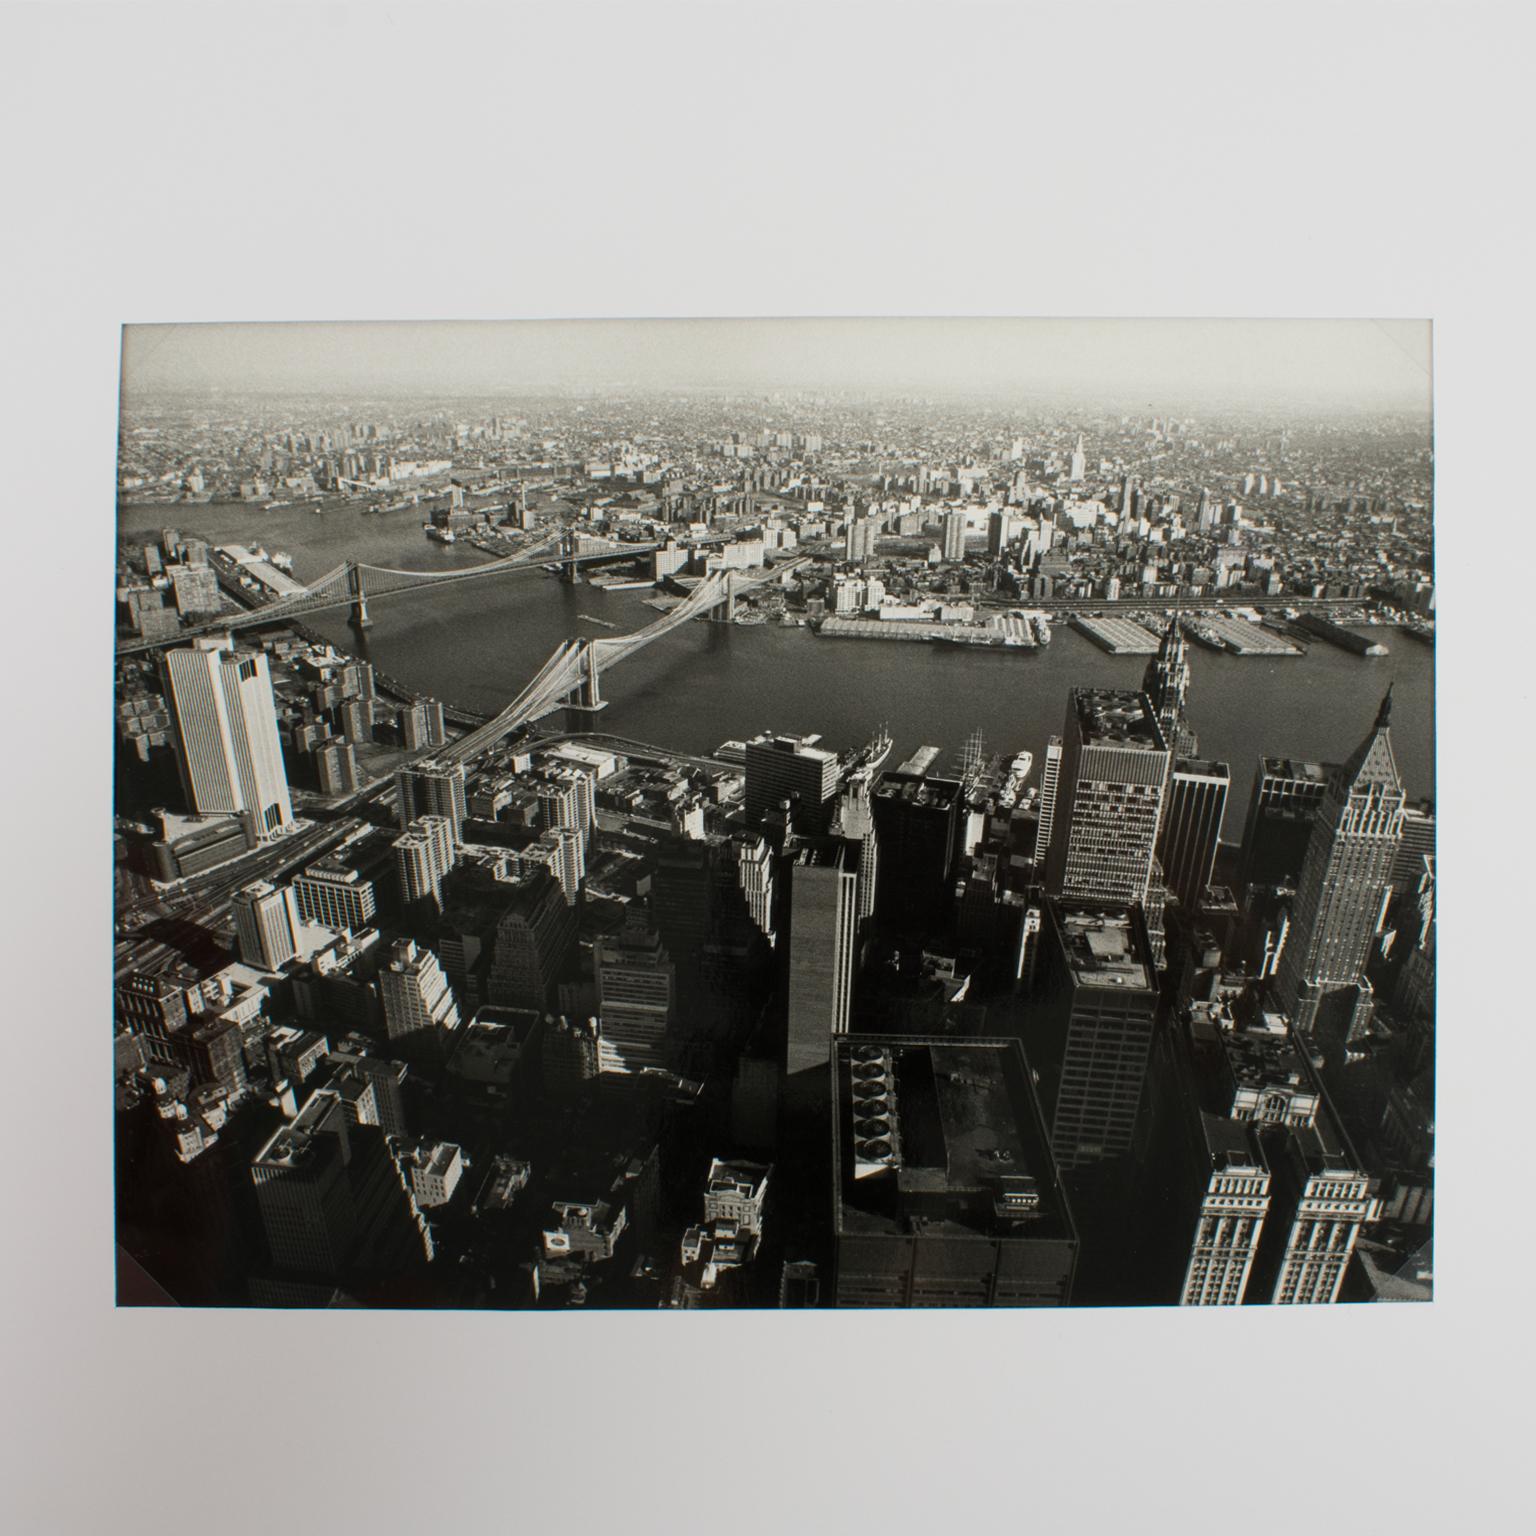 New York und der East River, Silber-Gelatine-Schwarz-Weiß-Fotografie von 1975 – Photograph von Poly-Press (Press Agency)